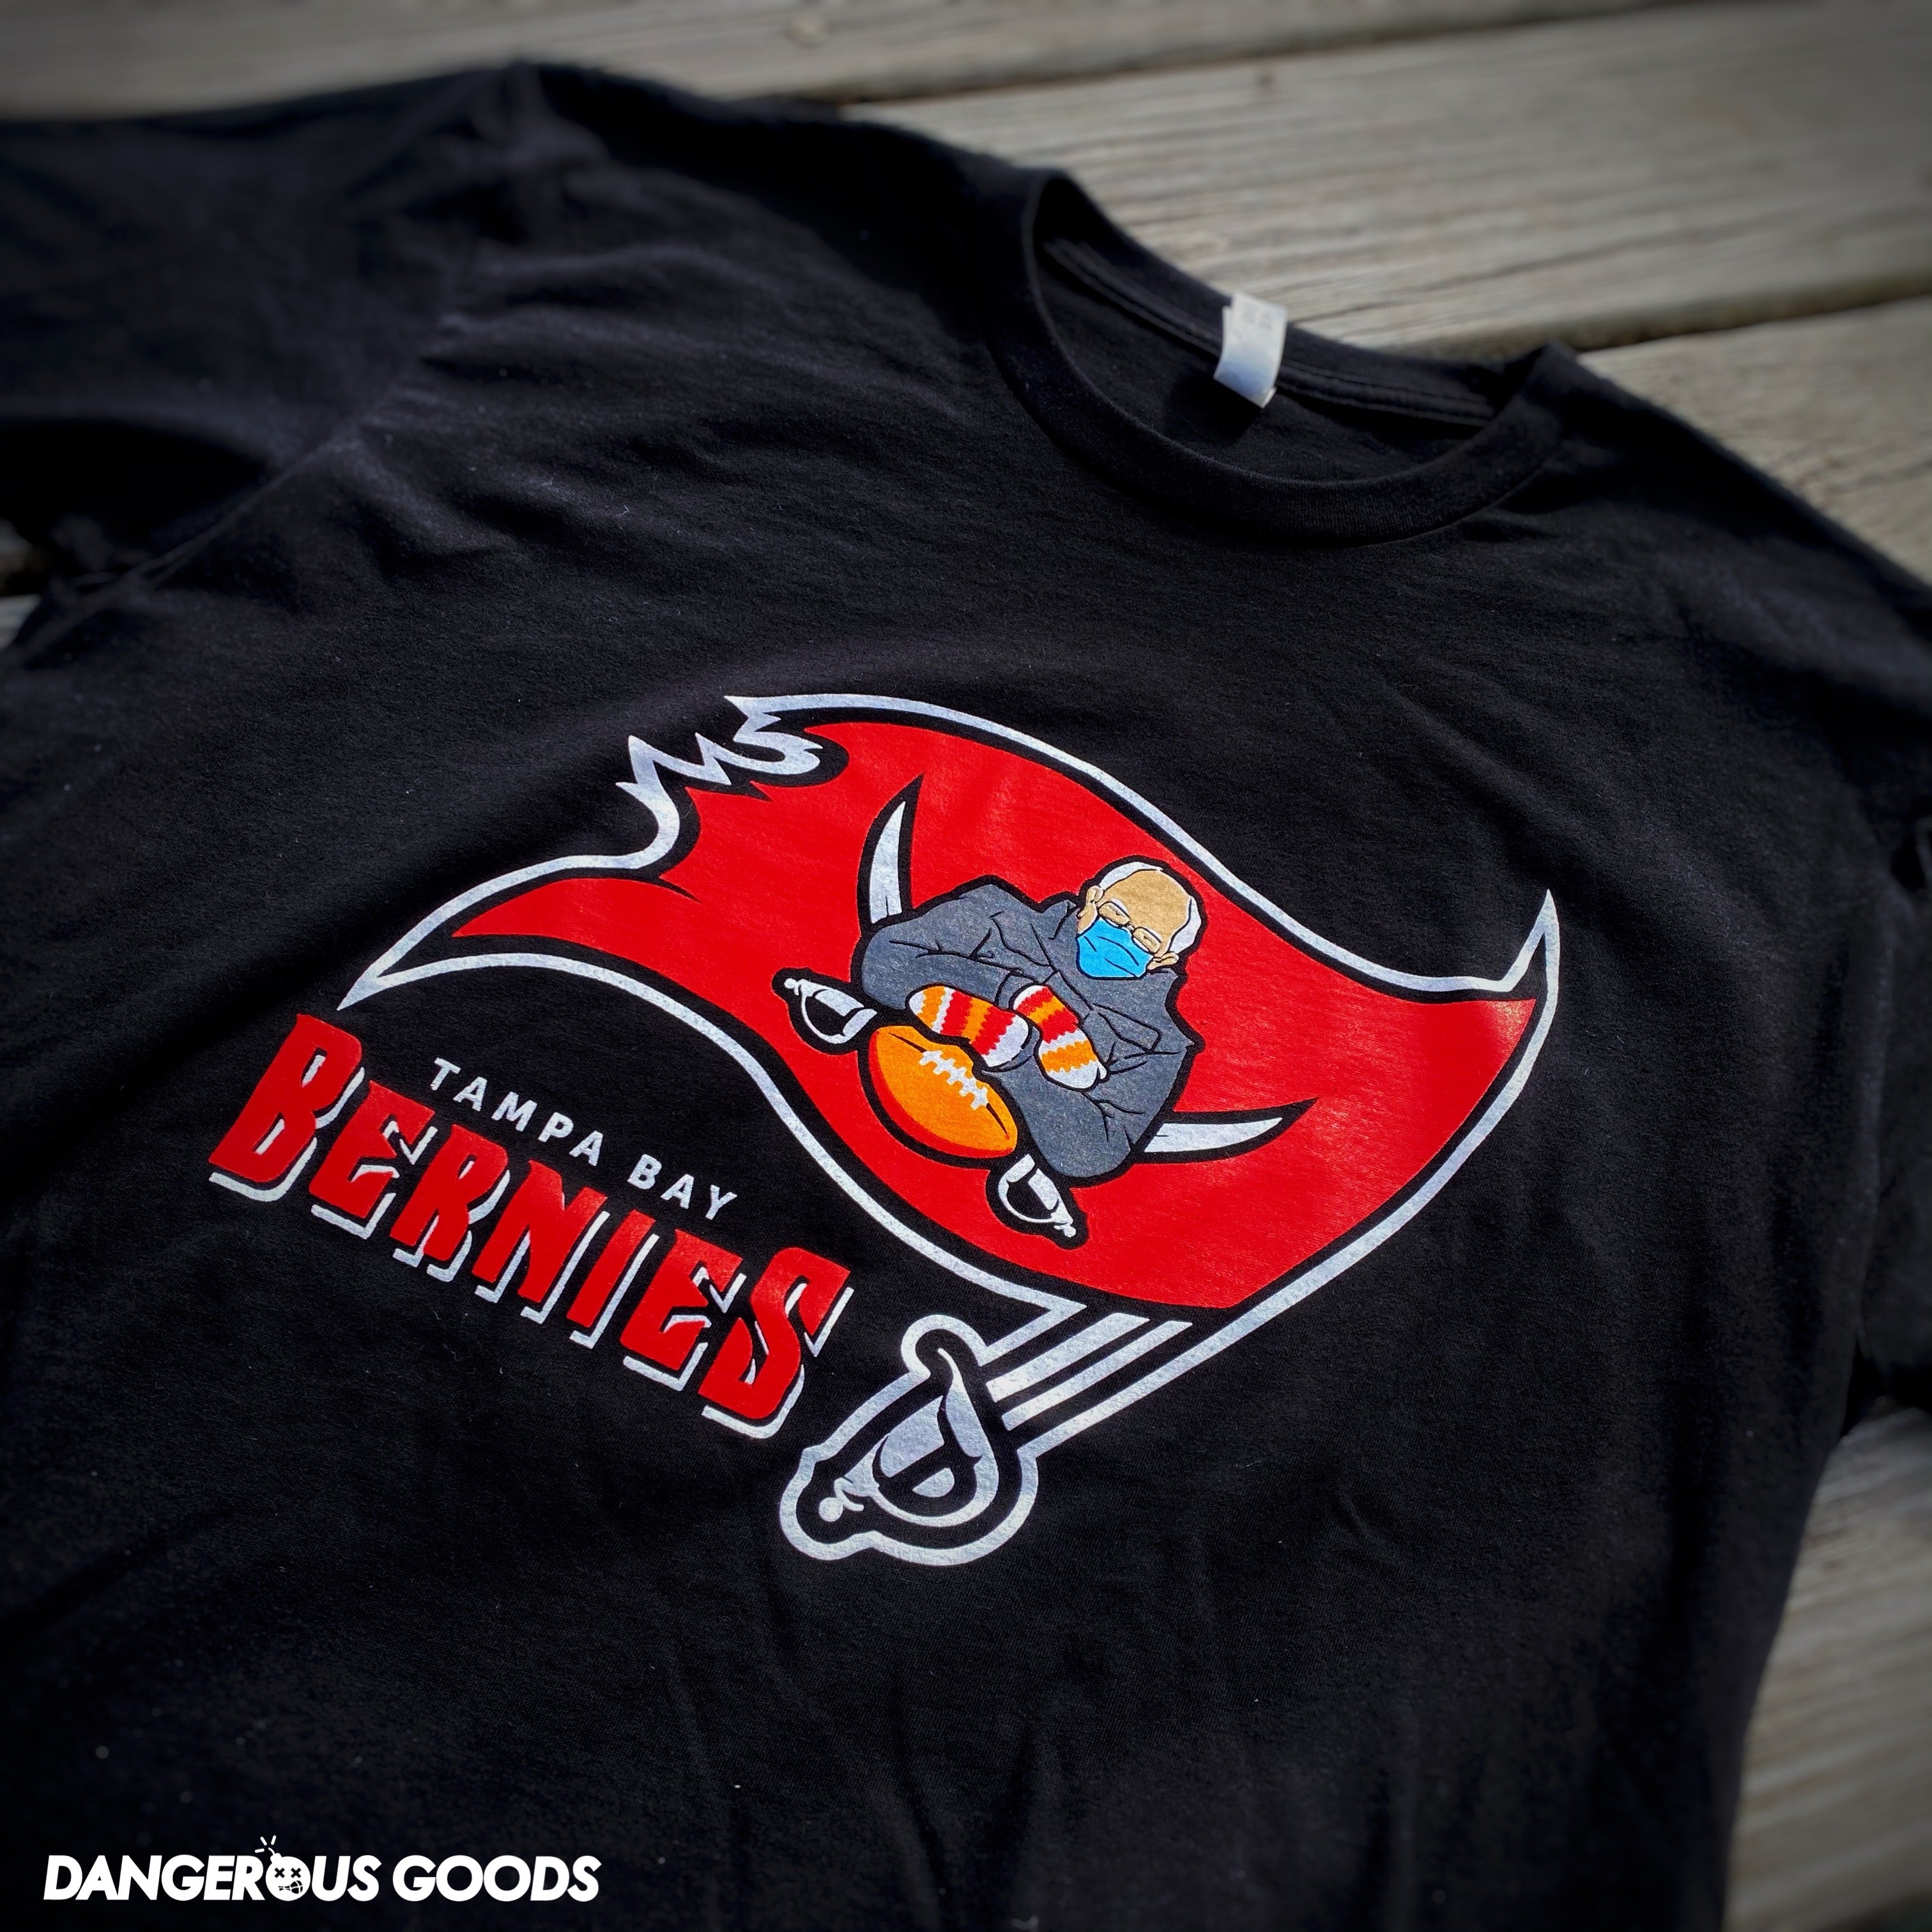 Dangerous Goods® Tampa Bay Bernie’s Football Team T-Shirt